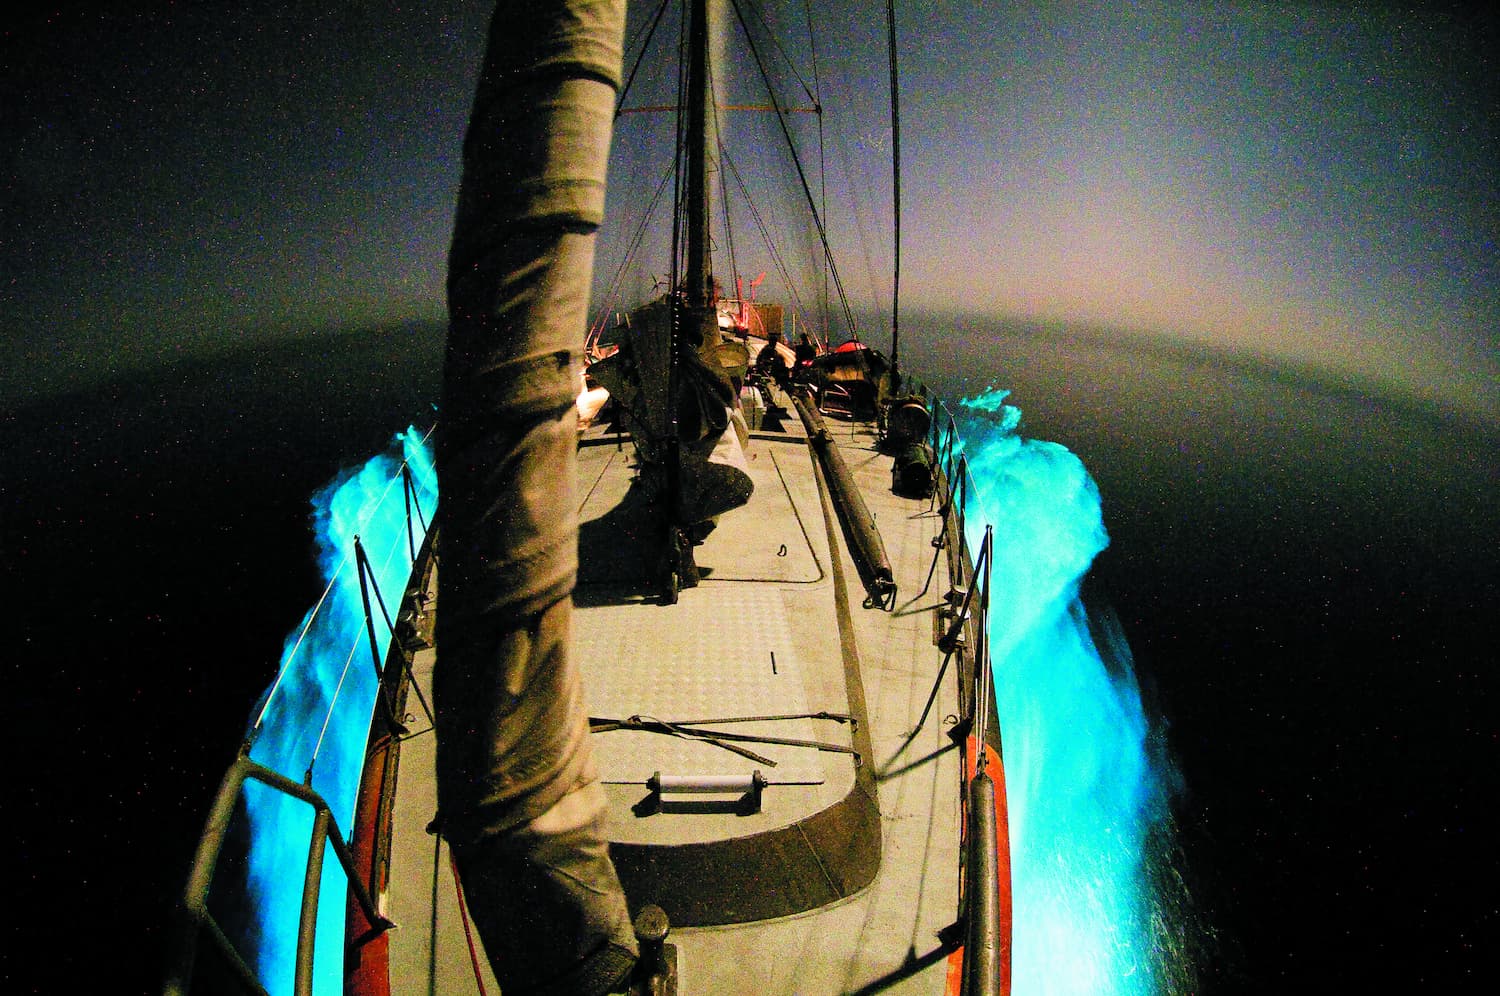 La goélette tara illuminée par le plancton photoluminescent dans le golf d'Aden.